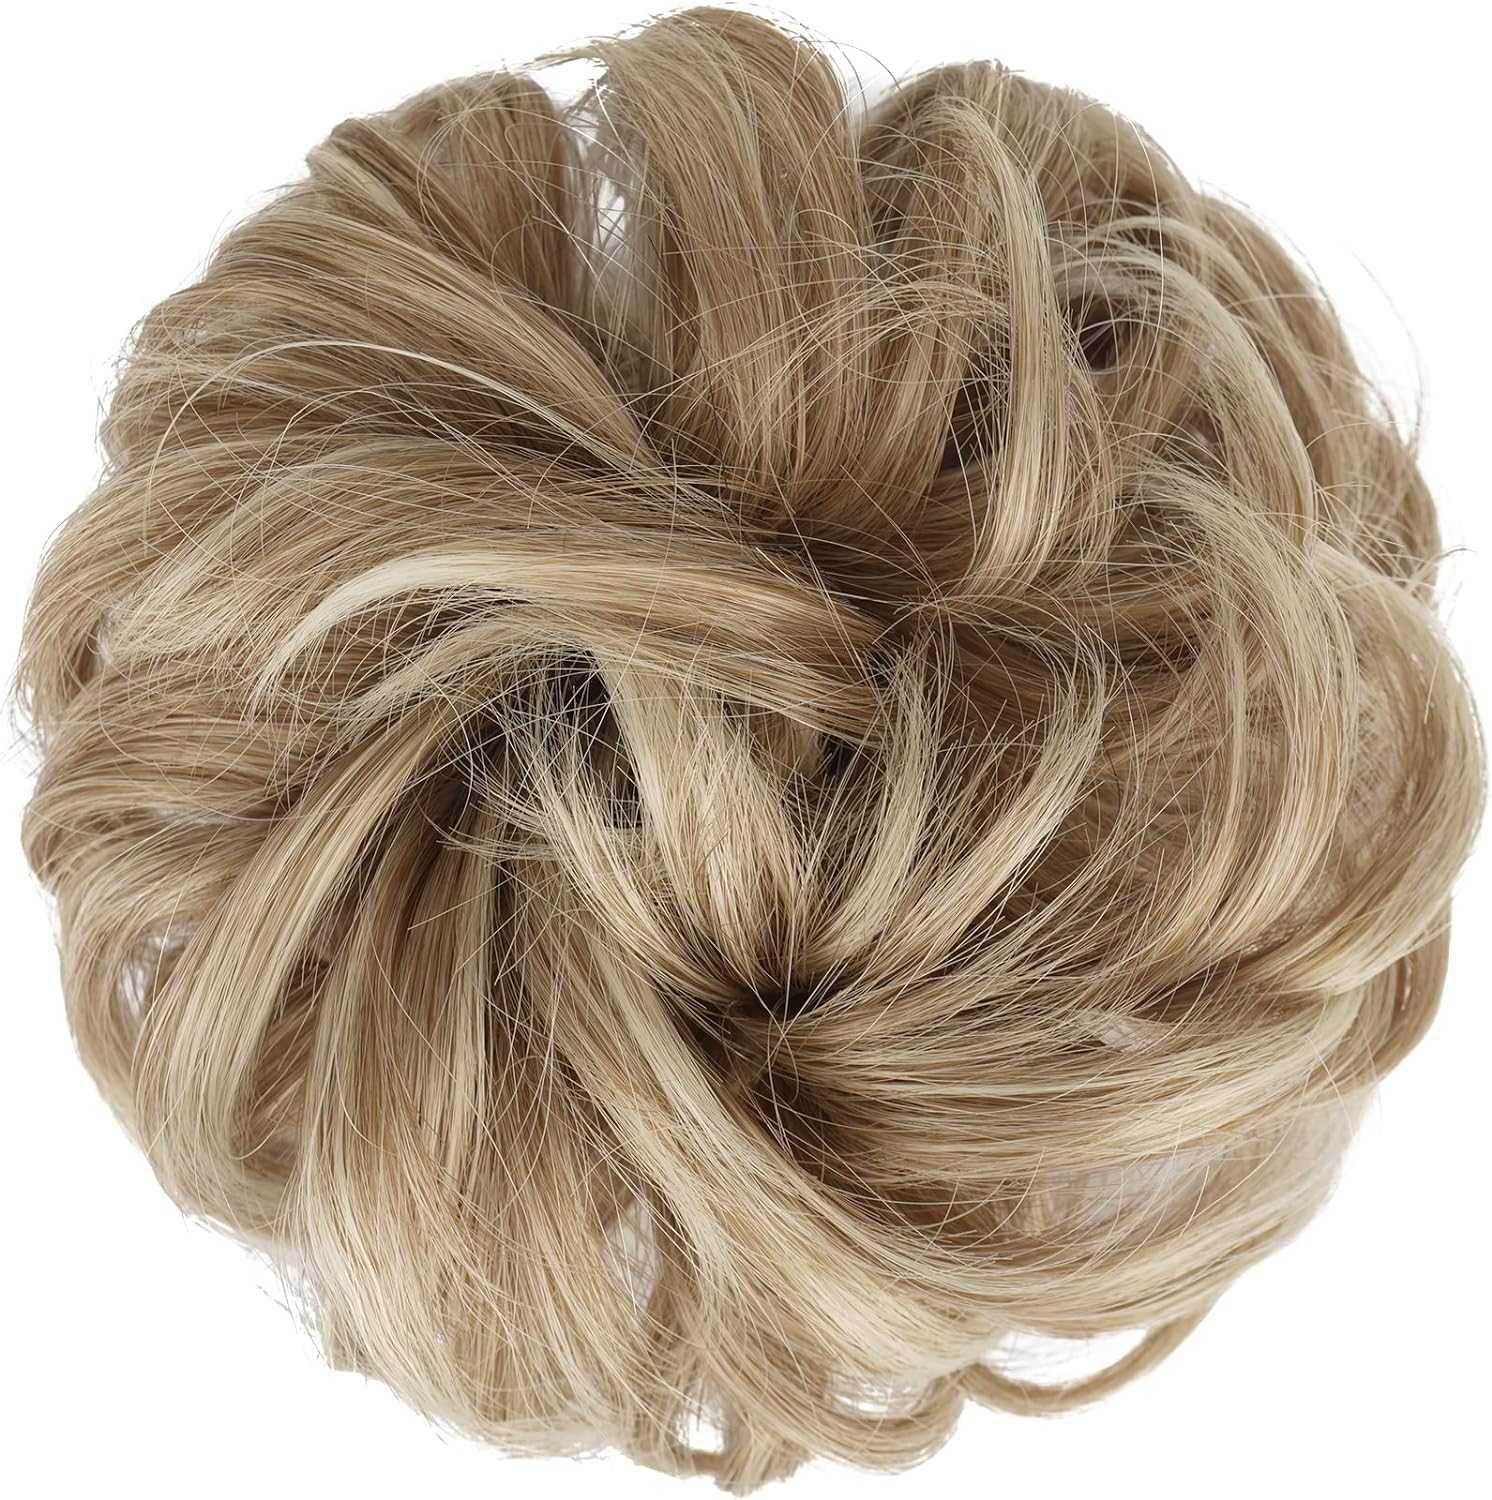 Treska kok na gumce włosy krótkie syntetyczne popielaty blond